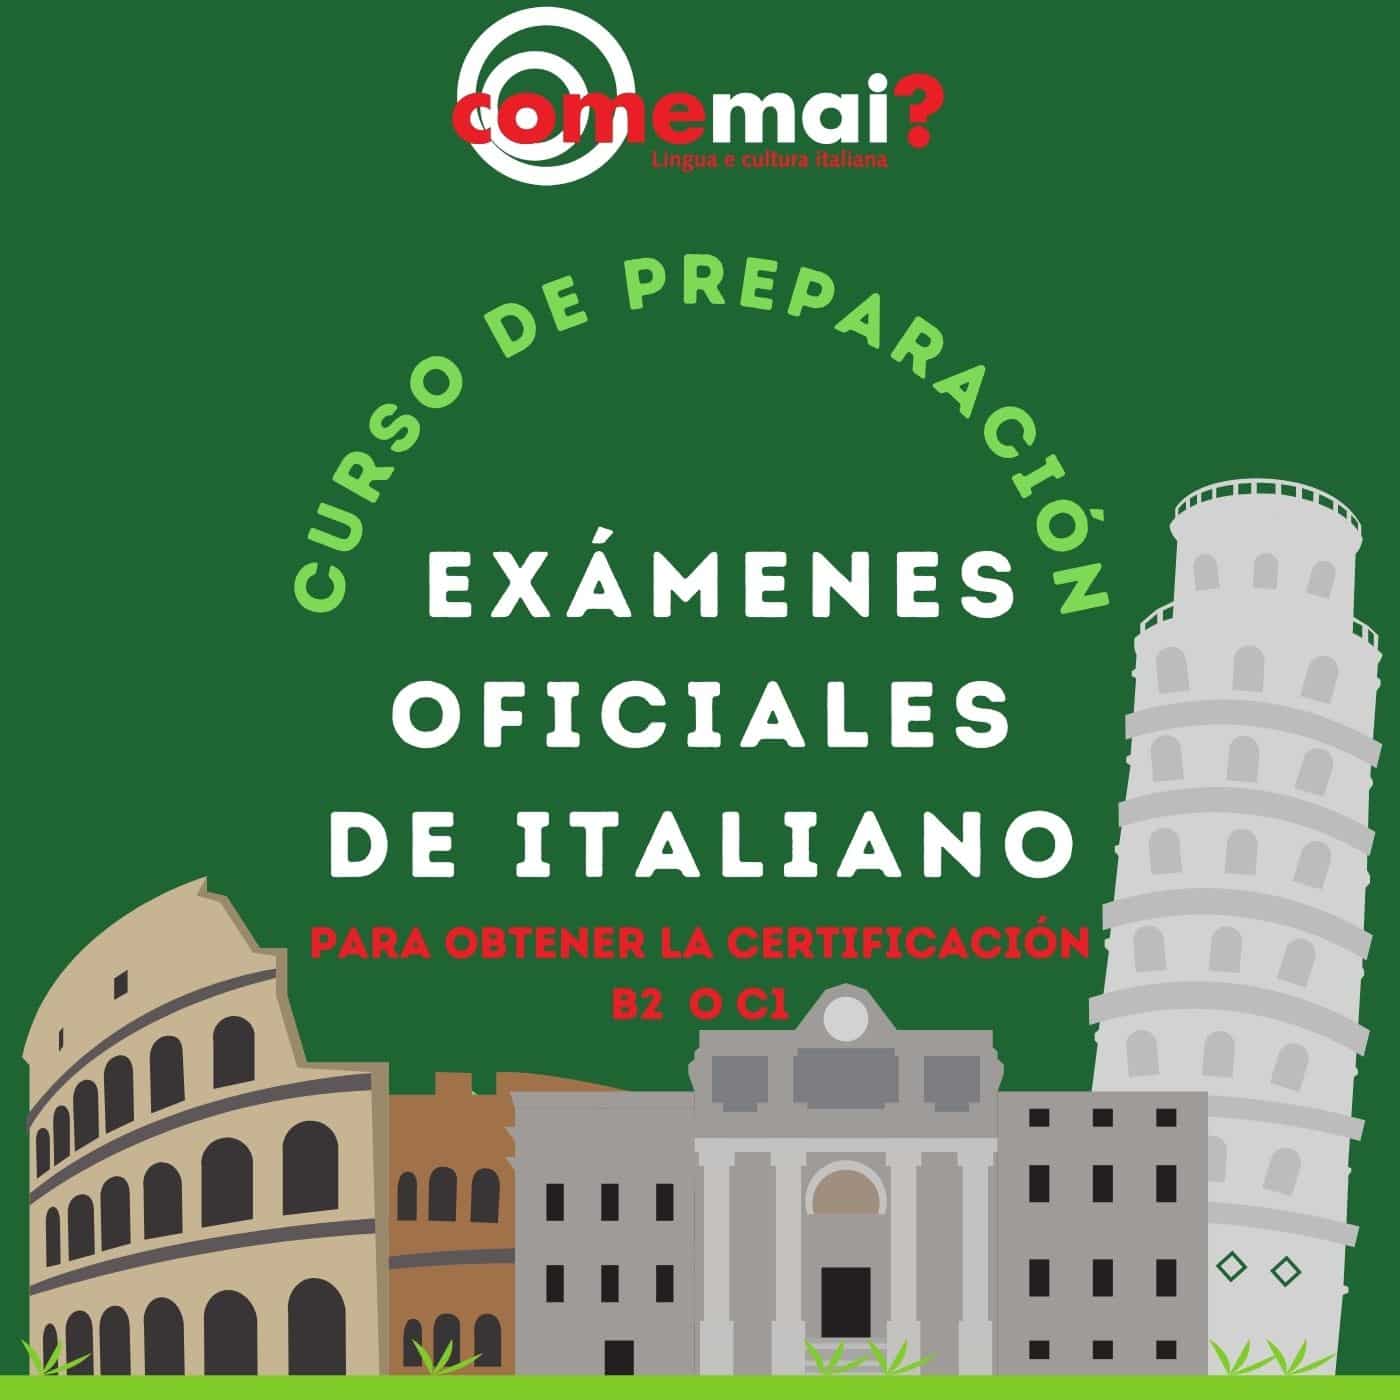 curso de preparación exámenes oficiales de italiano en Madrid